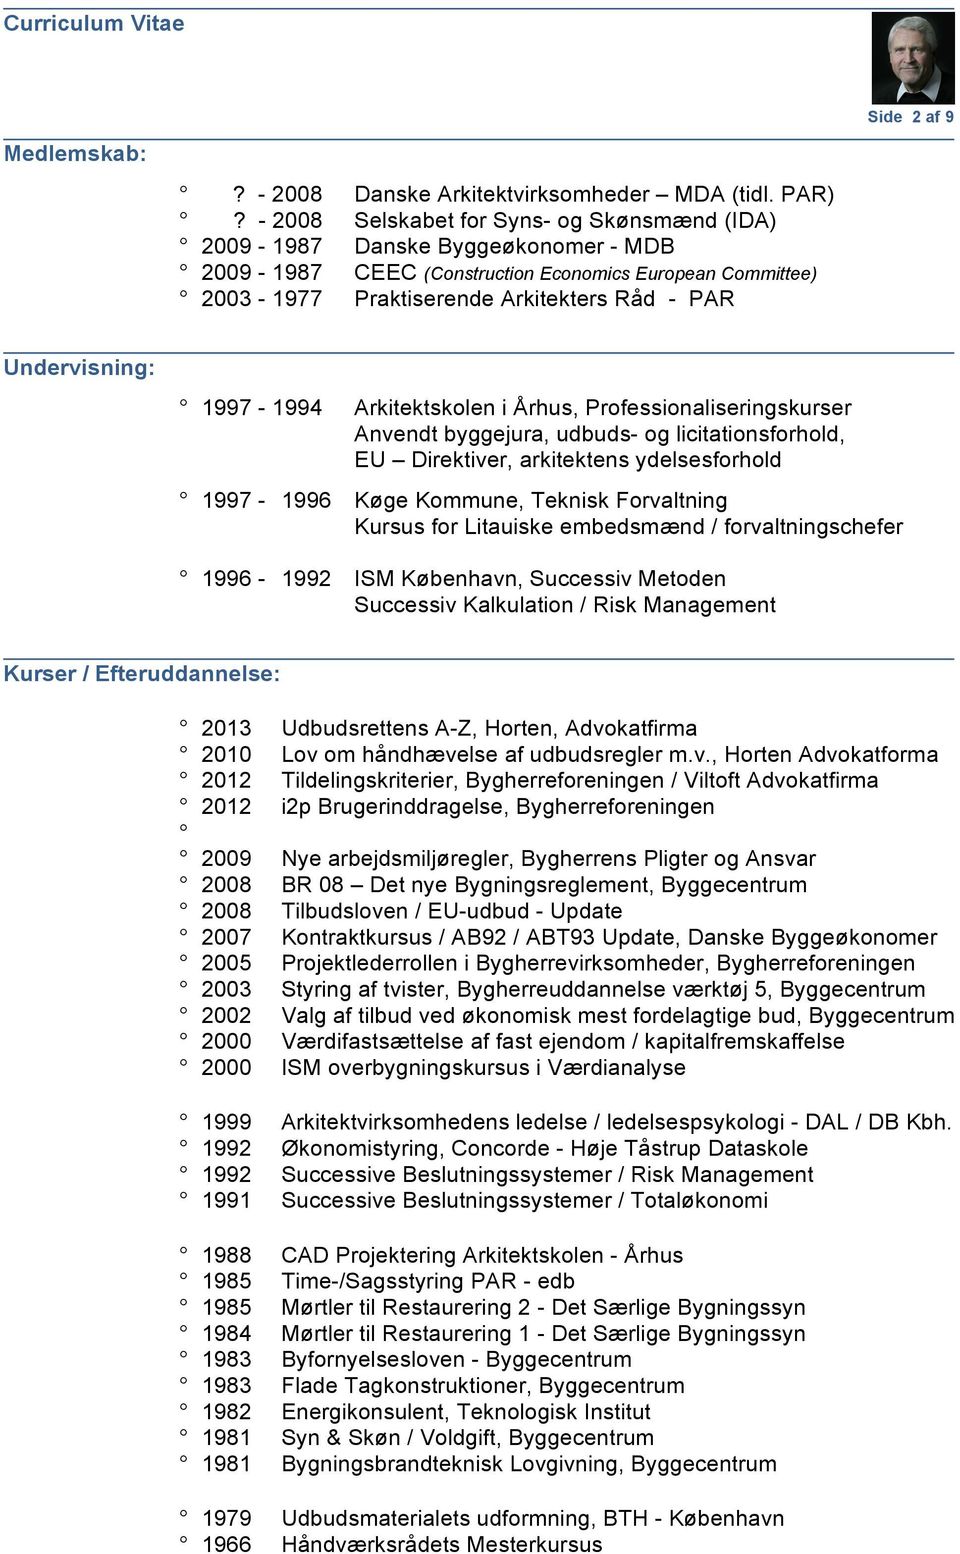 Undervisning: 1997-1994 Arkitektskolen i Århus, Professionaliseringskurser Anvendt byggejura, udbuds- og licitationsforhold, EU Direktiver, arkitektens ydelsesforhold 1997-1996 Køge Kommune, Teknisk